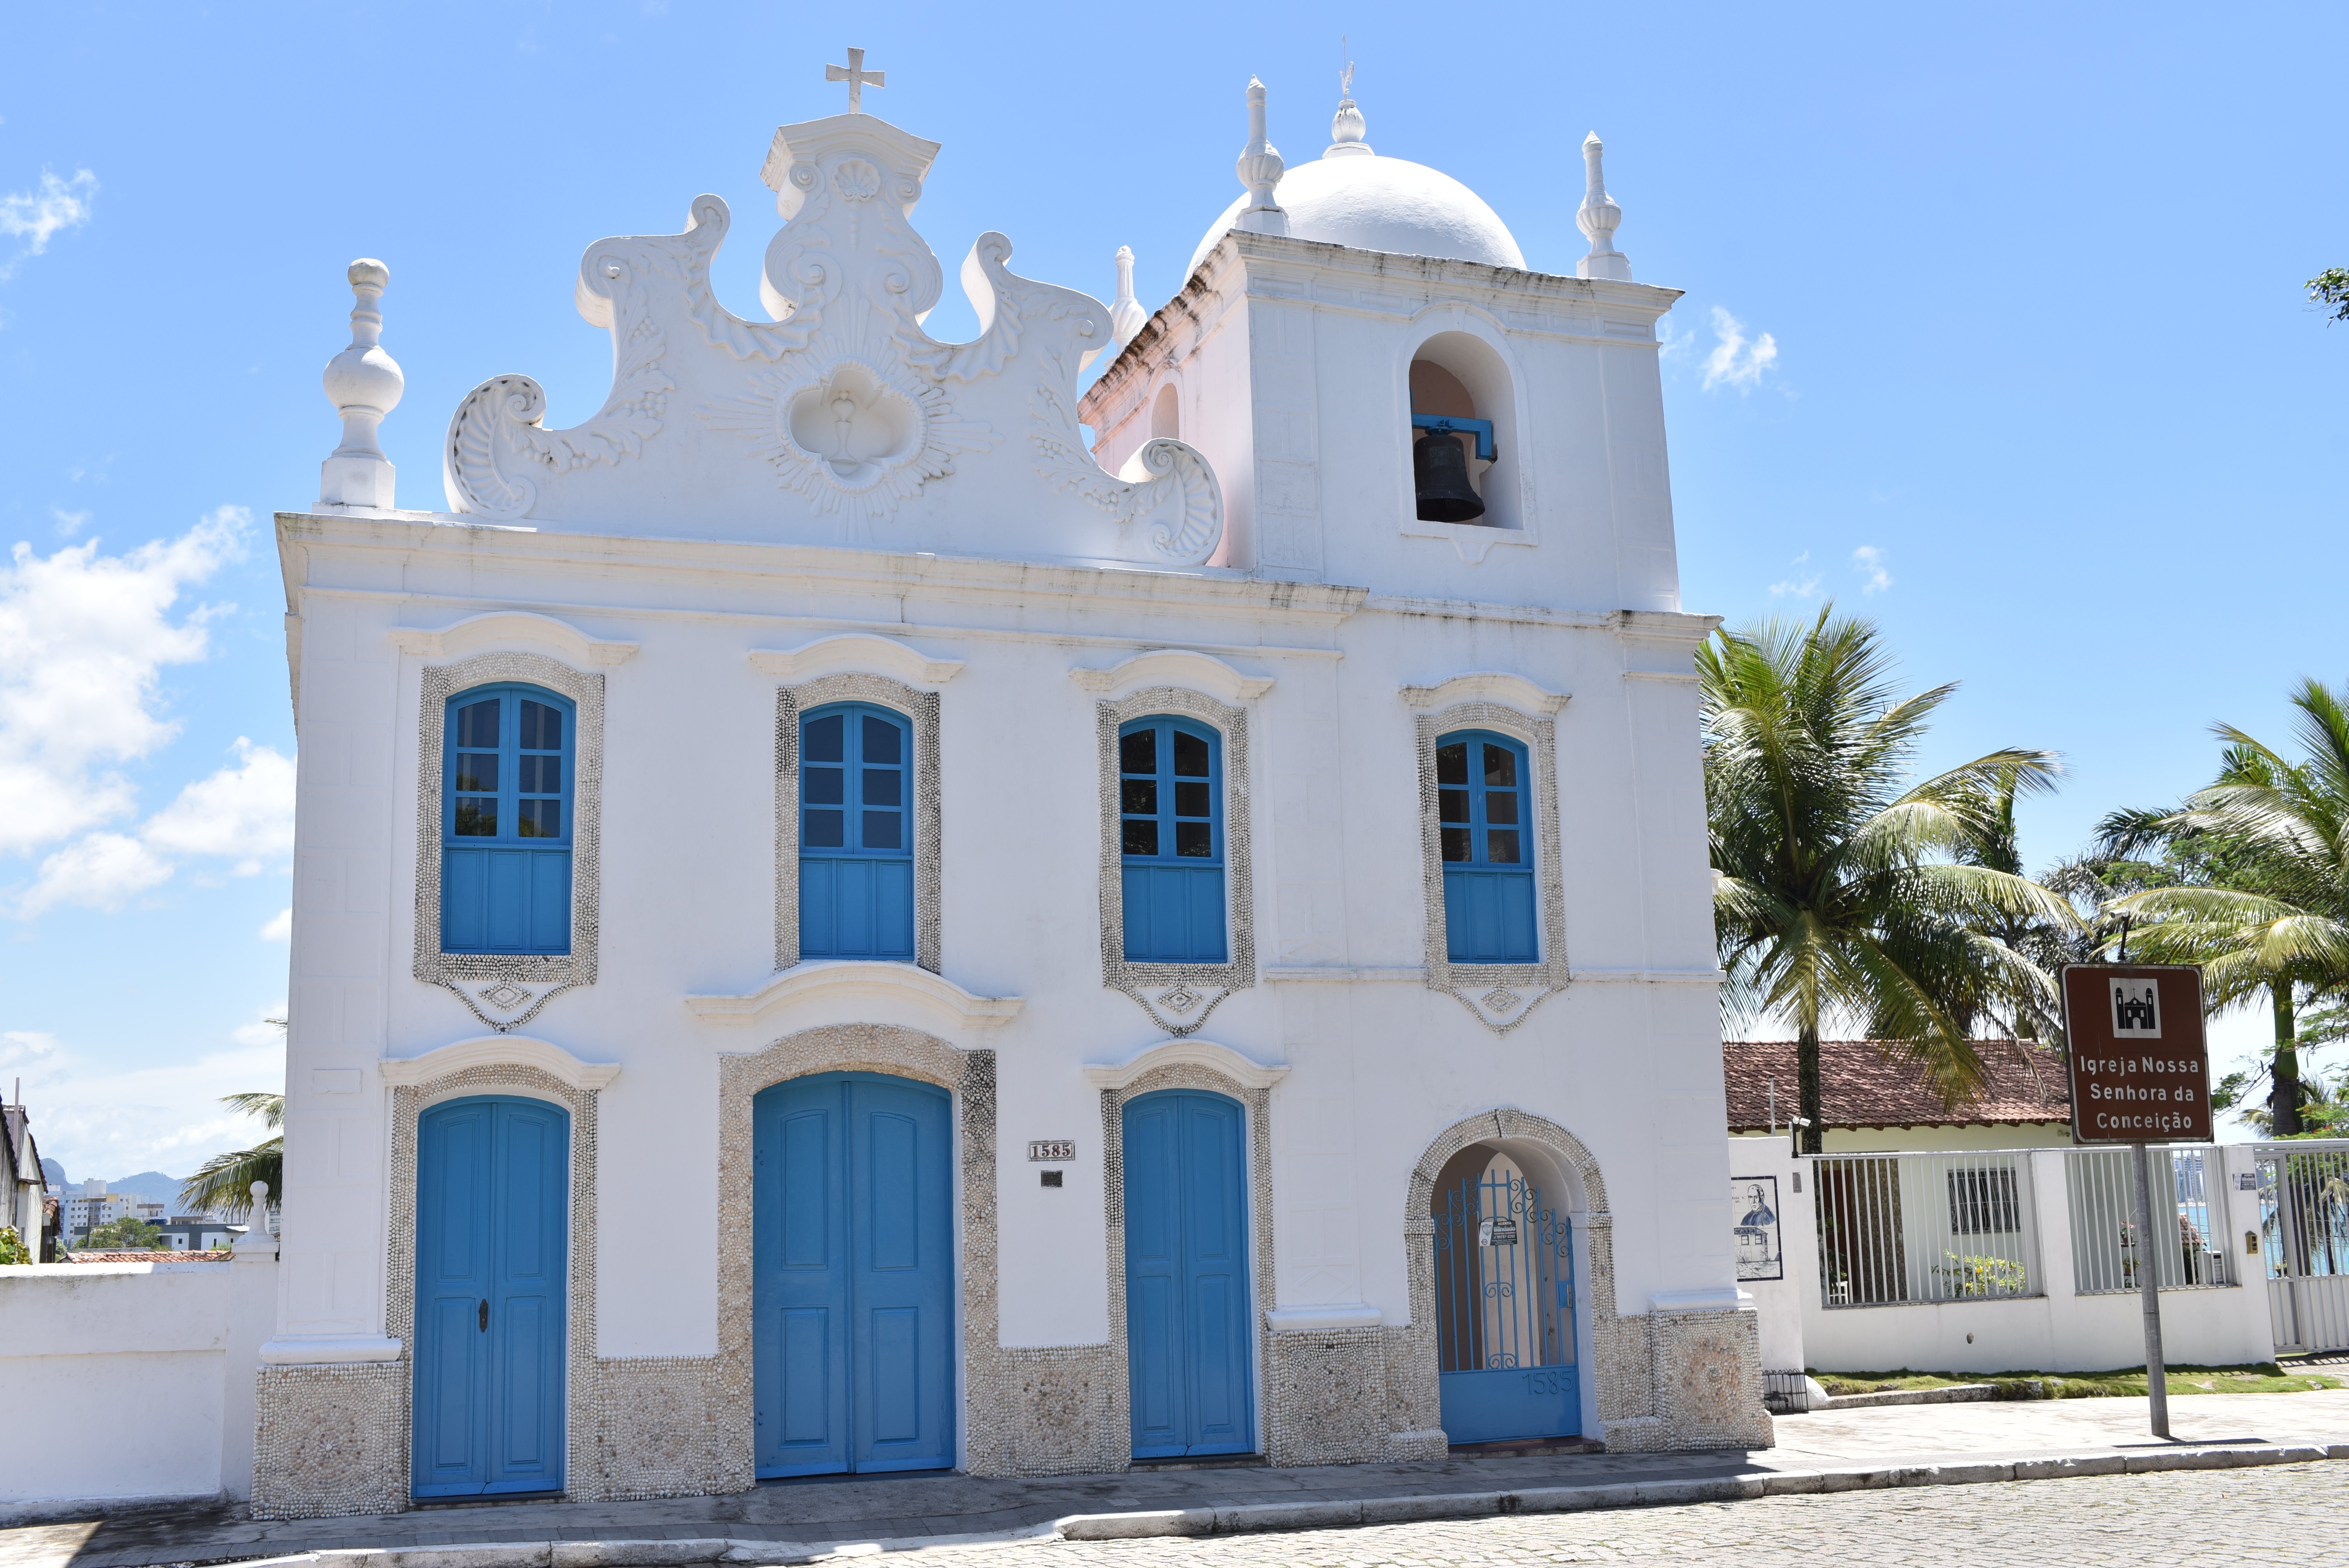  Igreja Nossa Senhora da Conceição, fundada por Anchieta